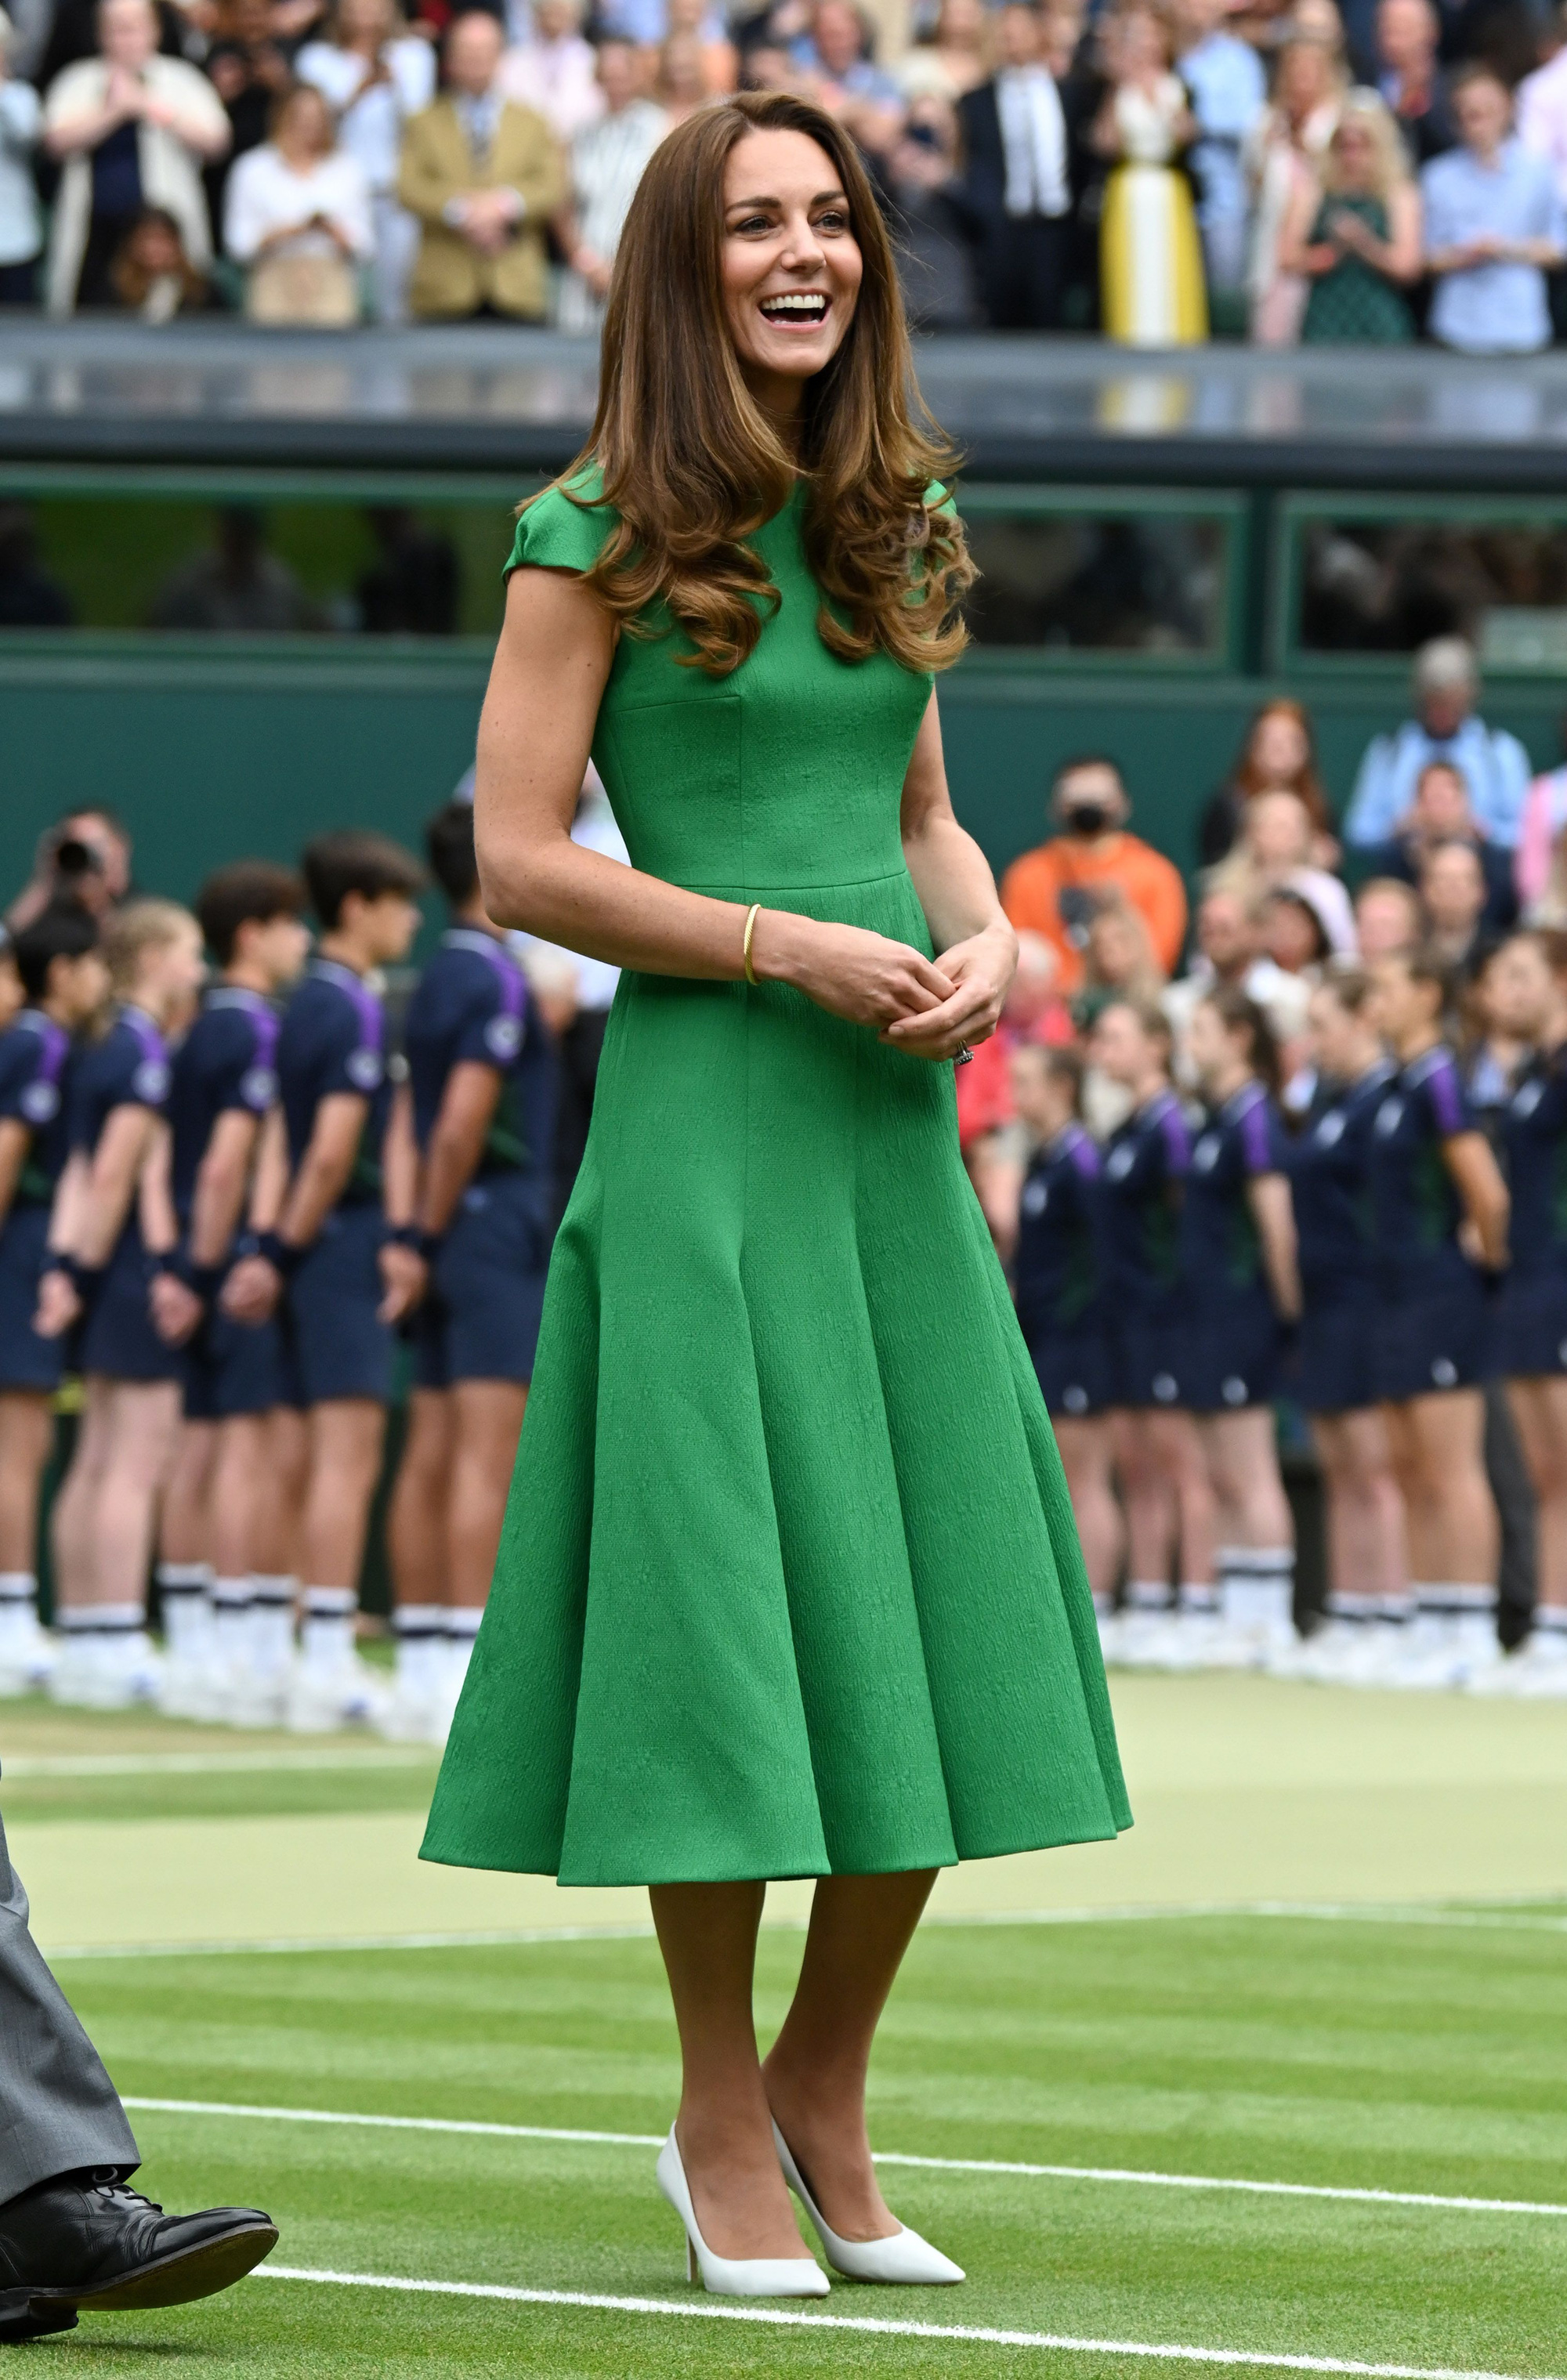 Nhìn hành trình thời trang 2021 của Kate Middleton mới thấy Meghan Markle chắc chắn không có cửa! - Ảnh 10.